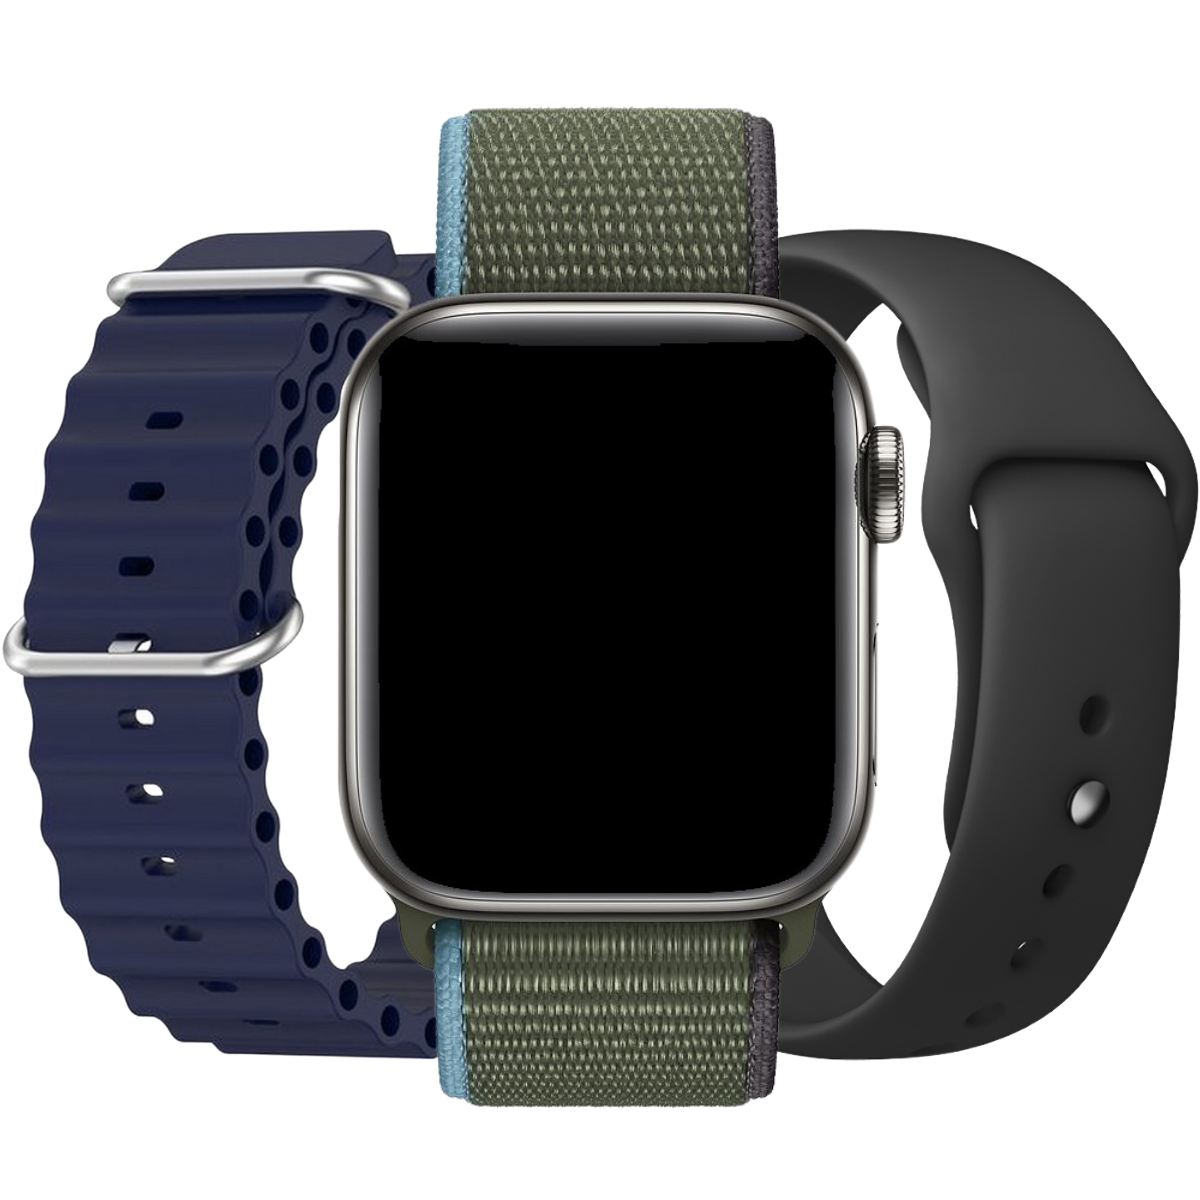 Gentiluomini Apple Watch pacchetto vantaggio - 3x